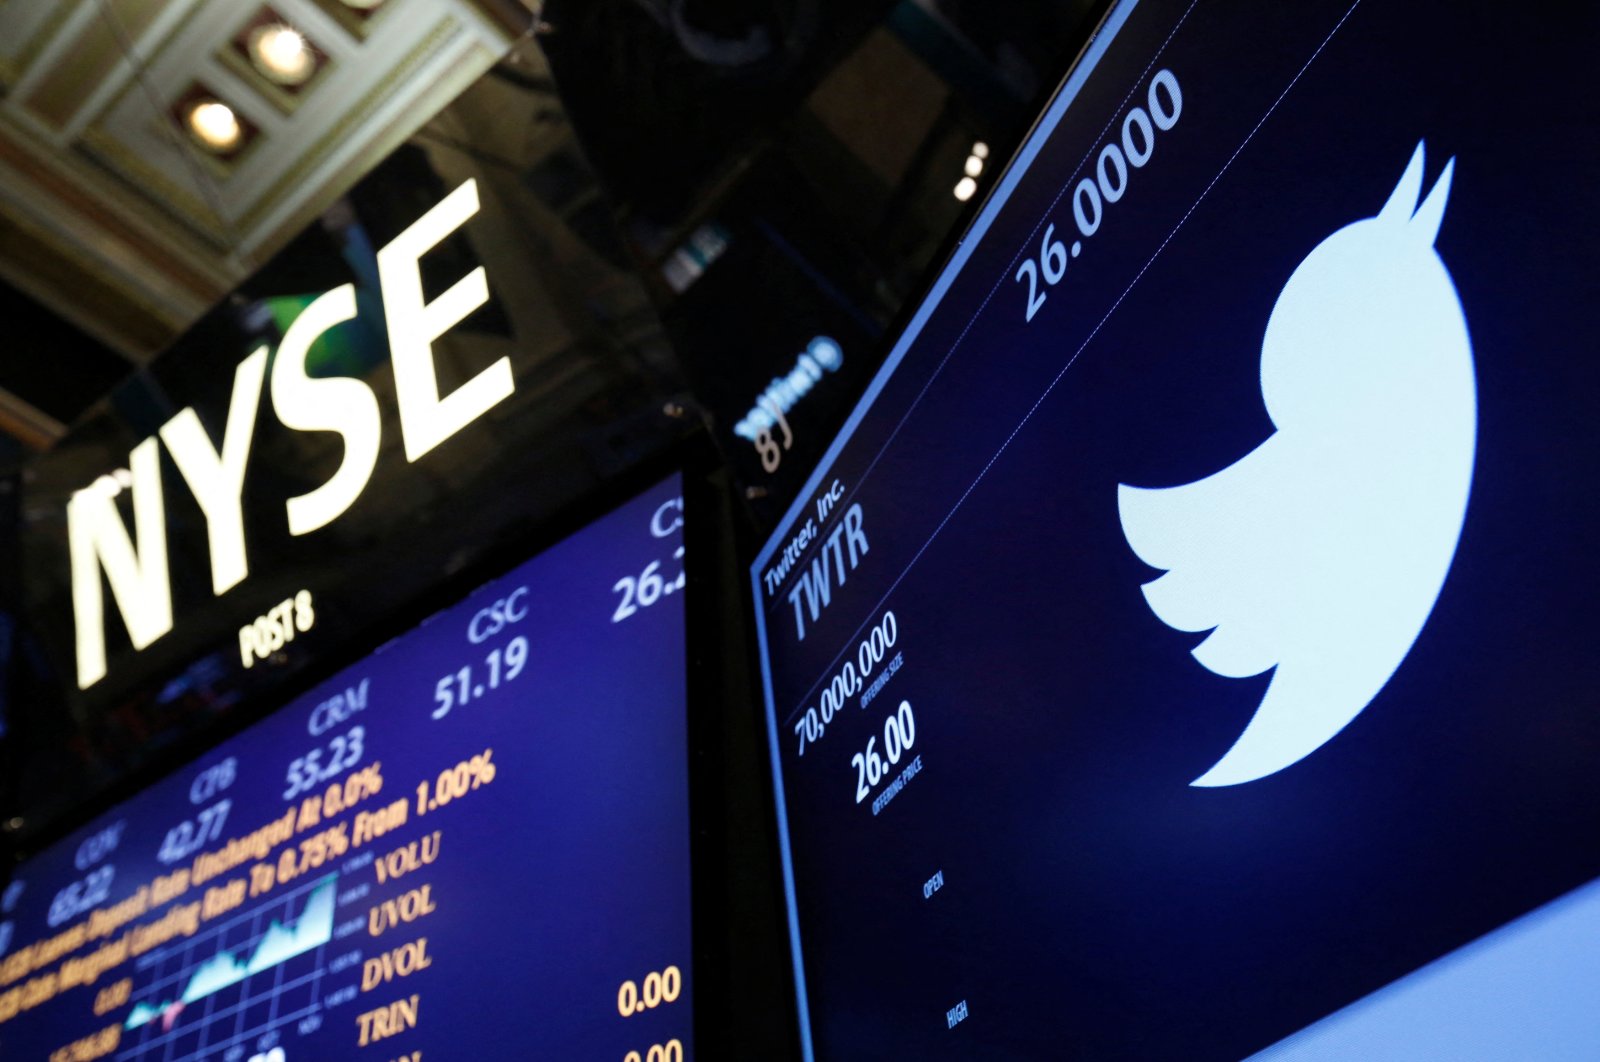 Saham Twitter akan ditangguhkan di NYSE saat Musk mendekati pengambilalihan